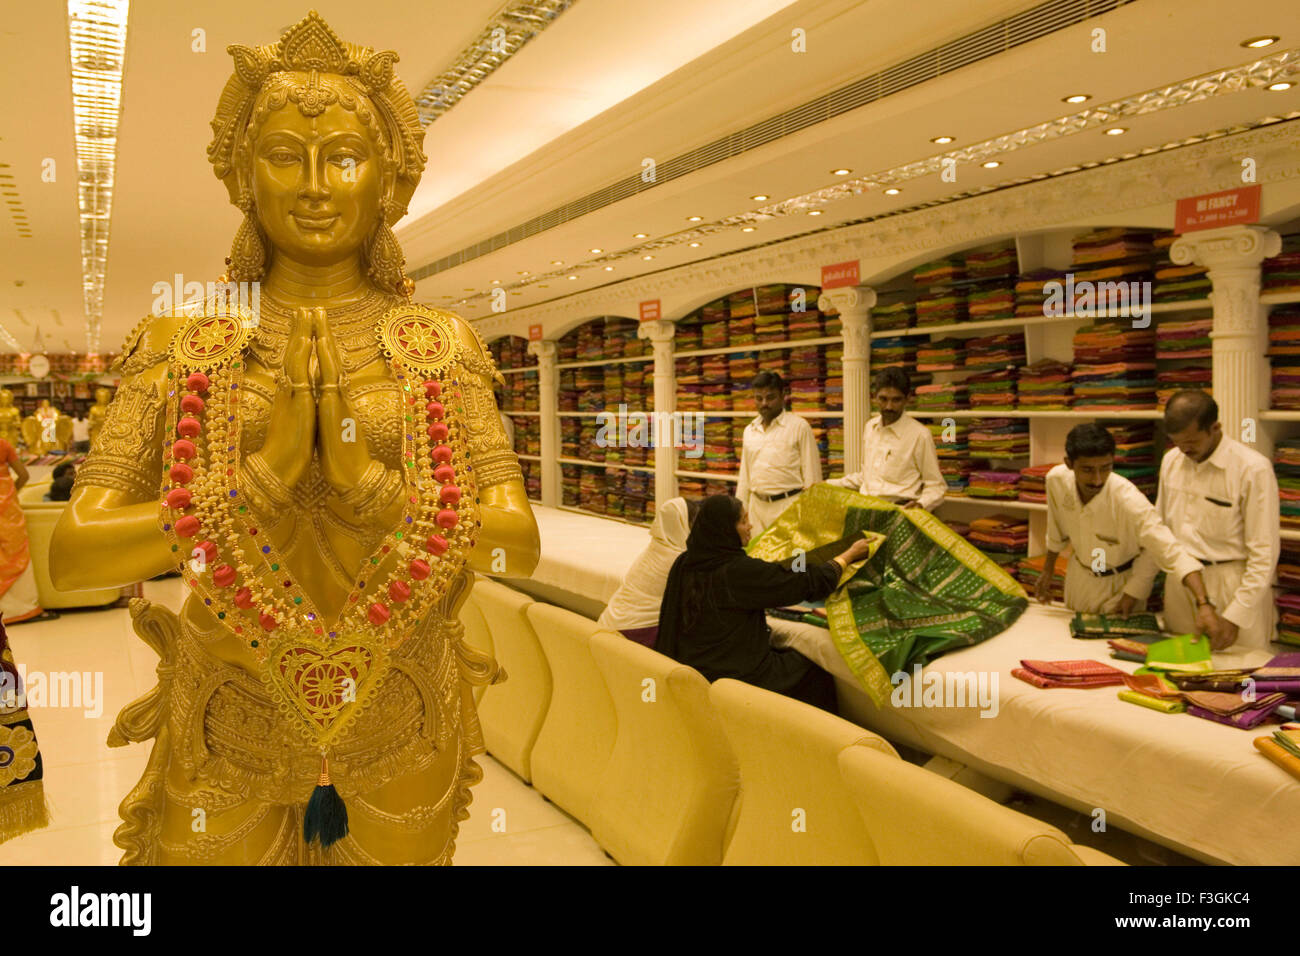 Interior del centro comercial con la estatua de la mujer parte de la decoración para atraer clientes ; ; ; Chennai Tamil Nadu, India Foto de stock